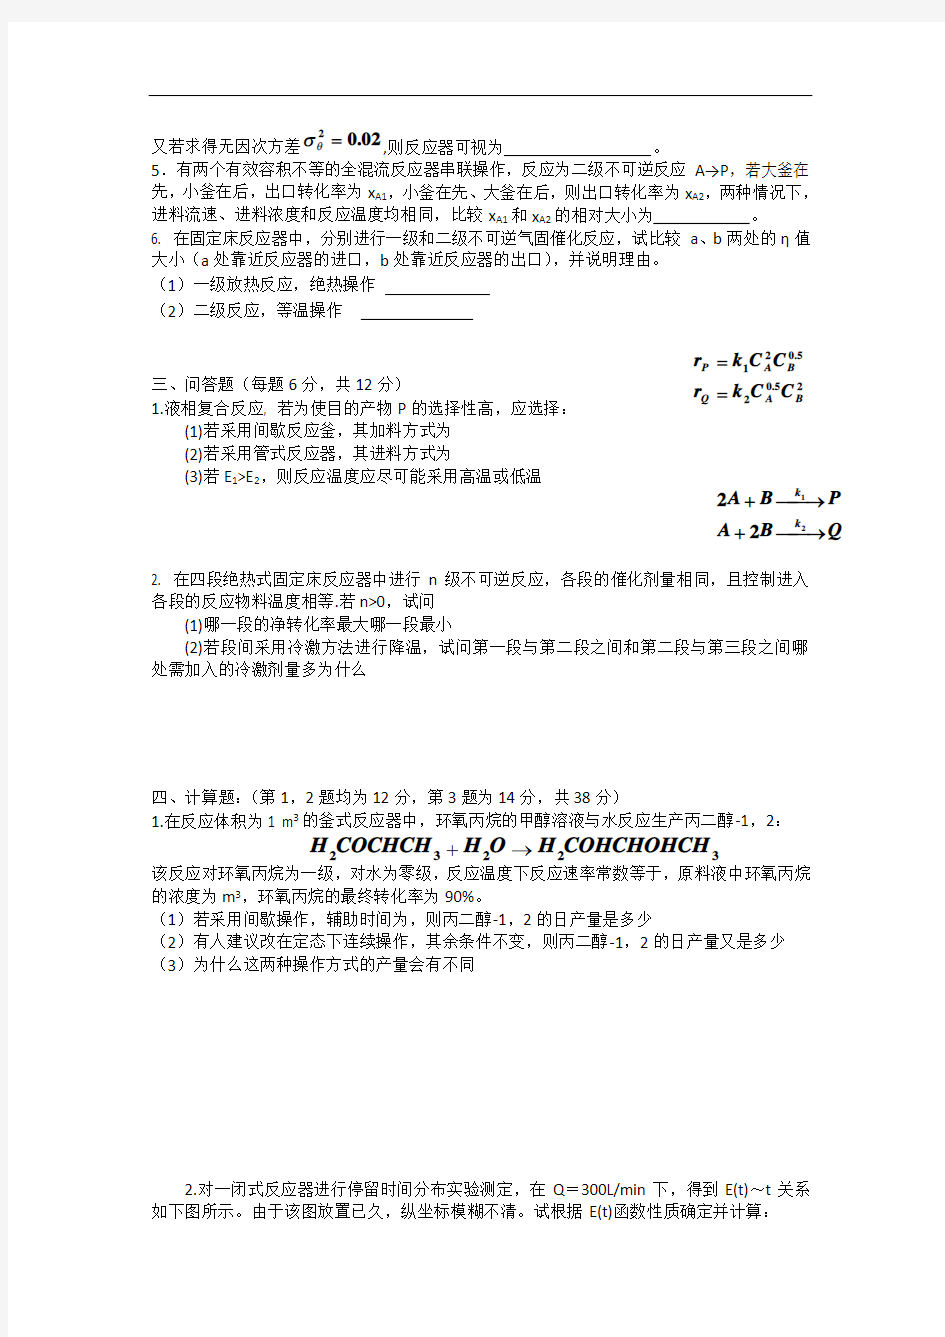 五邑大学化学反应工程期末考试试题及答案(整理)